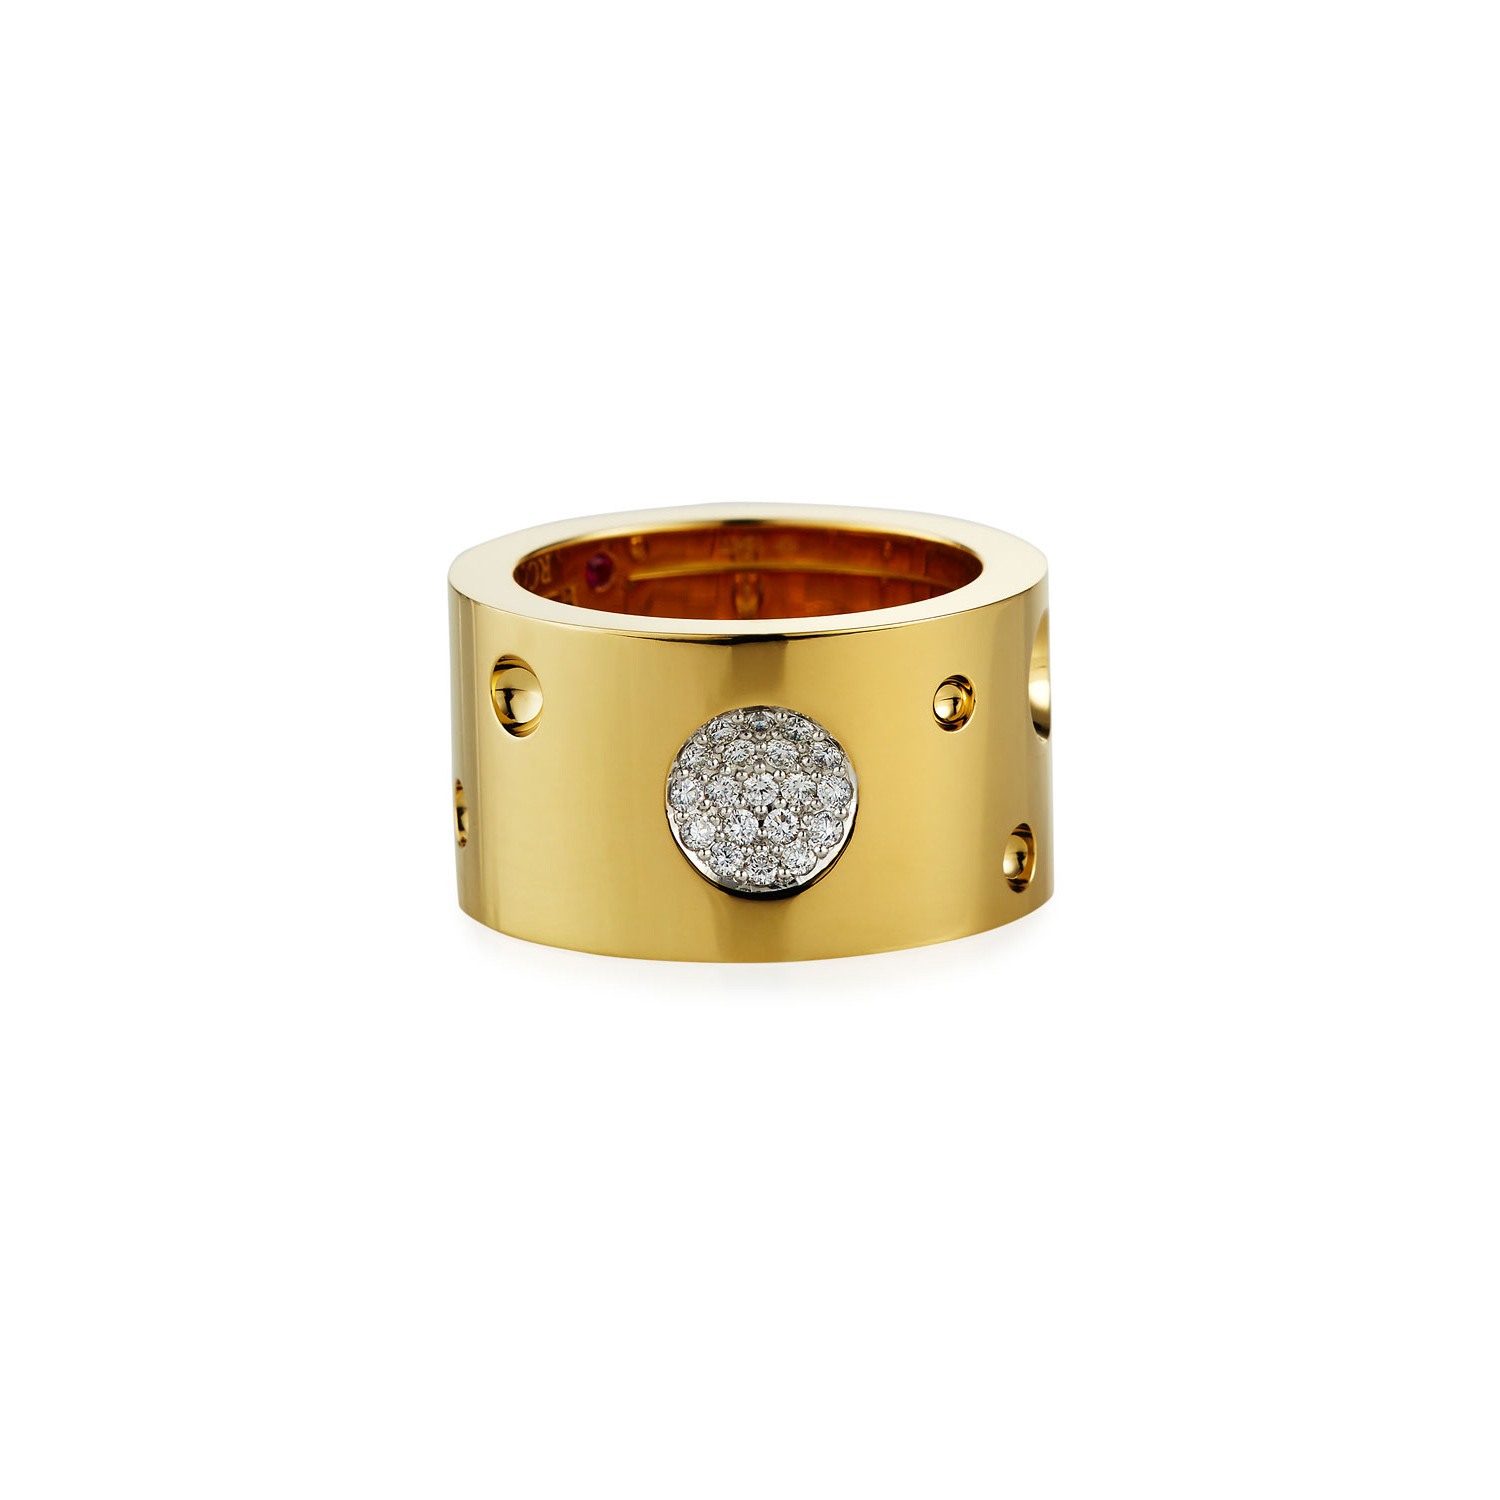 Оптовая продажа OEM/ODM ювелирных изделий на заказ из 18-каратного золота и бриллиантового кольца для женщин, дизайнер ювелирных украшений